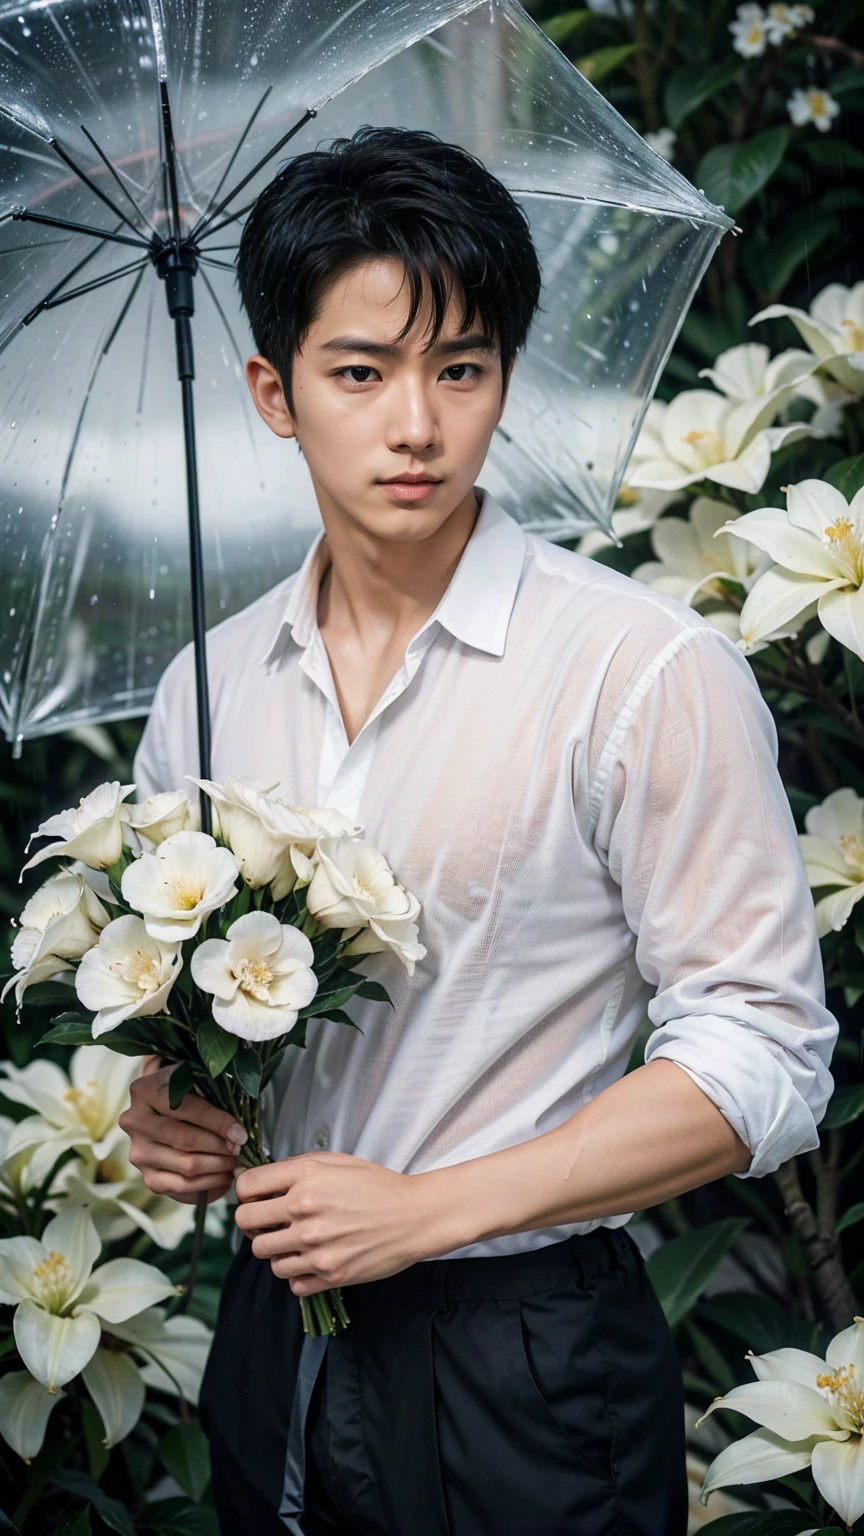 魅力的な画像にはハンサムな韓国人男性が写っている, 32歳、 彼は大雨の中、クチナシの花が咲いている斜面に傘をさして立っている., 遠くを見つめる、細部への注意, この写実的な肖像画はナショナルジオグラフィックのスタイルを体現している., 8K解像度で肌の質感のあらゆるニュアンスを捉えます. 彼の特徴は純粋な明瞭さで際立っている, 深く落ち込んだ目から彫りの深い顎のラインまで, この画像を真の傑作にする. 人生, 最高品質, 8KウルトラHD+, leica digital SlR camera、キム・ミョンス、l